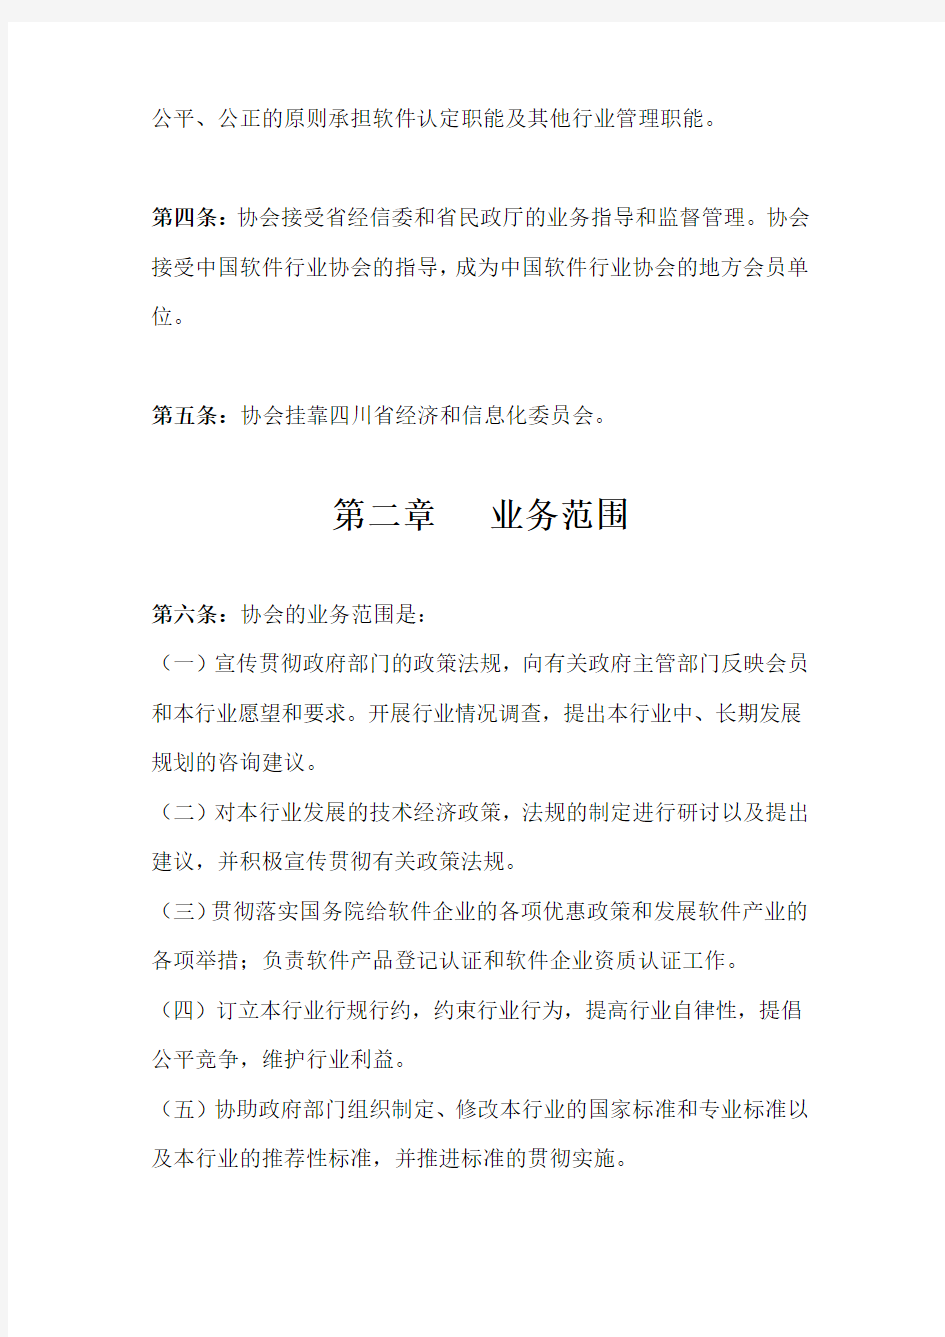 四川省软件行业协会章程